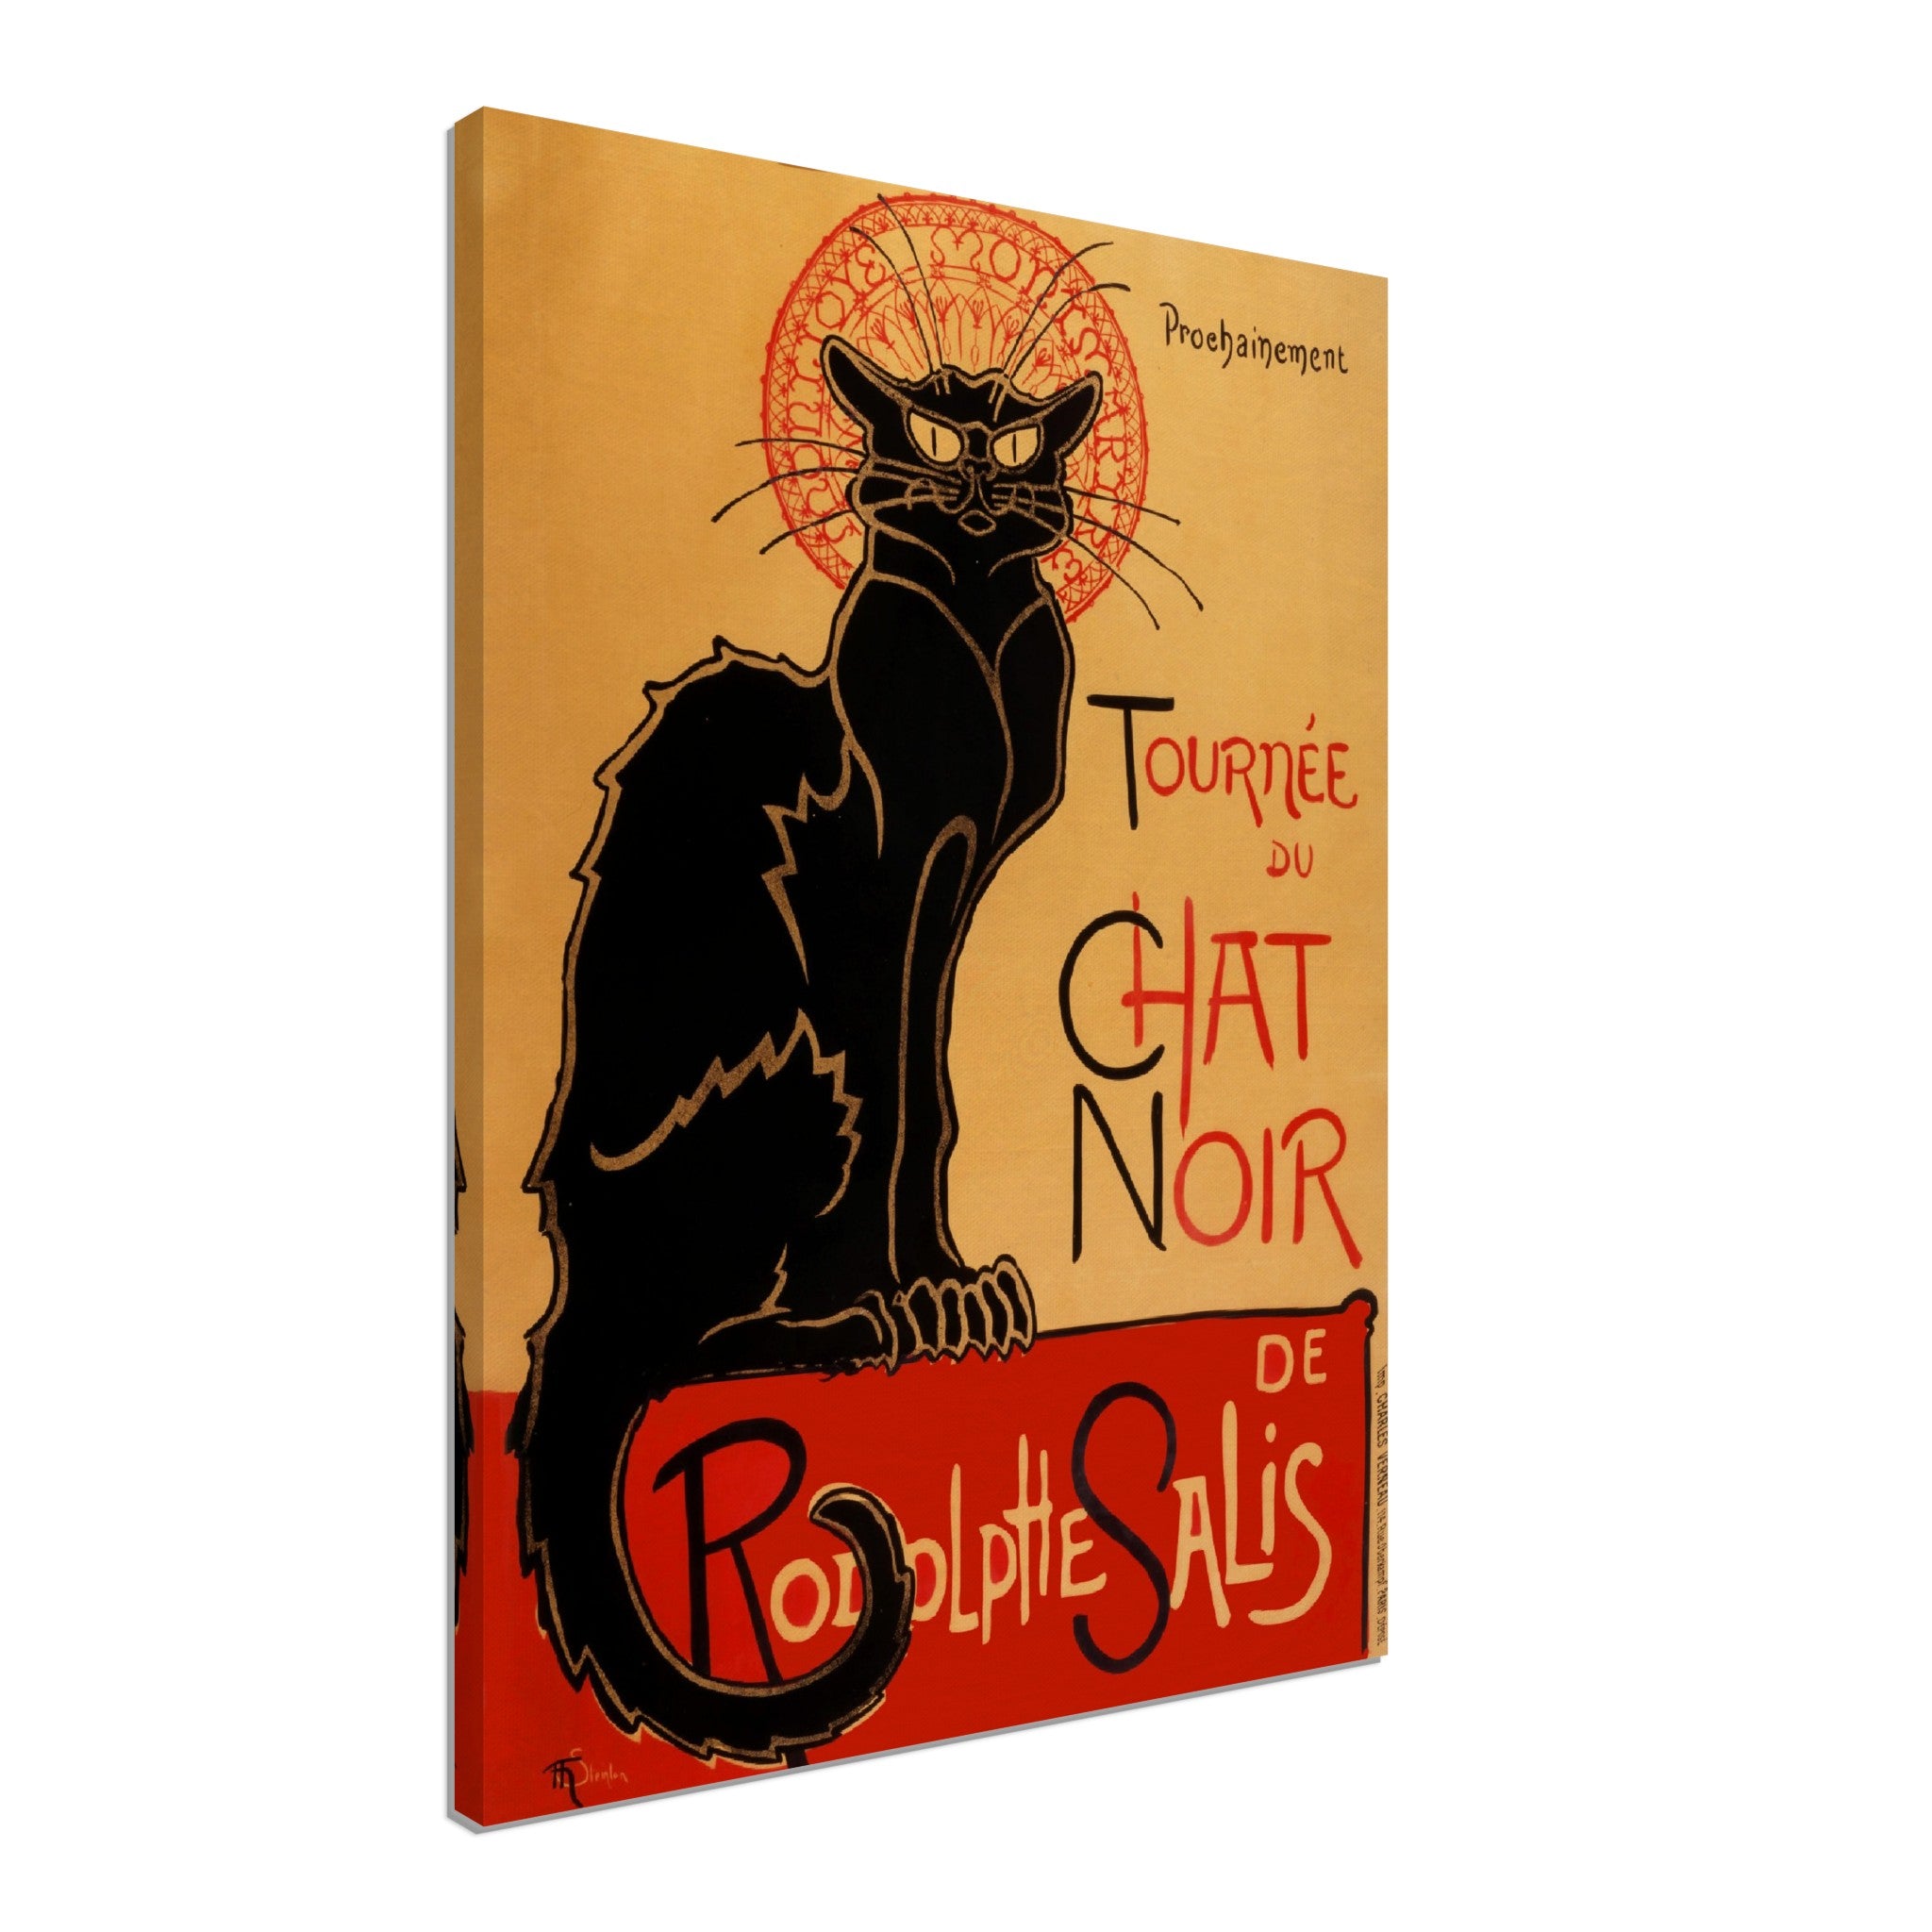 Le Chat Noir Canvas Print - Tournee Du Chat Noir - Le Chat Noir Cat Canvas - Rodolp[He Salis 1896 - WallArtPrints4U